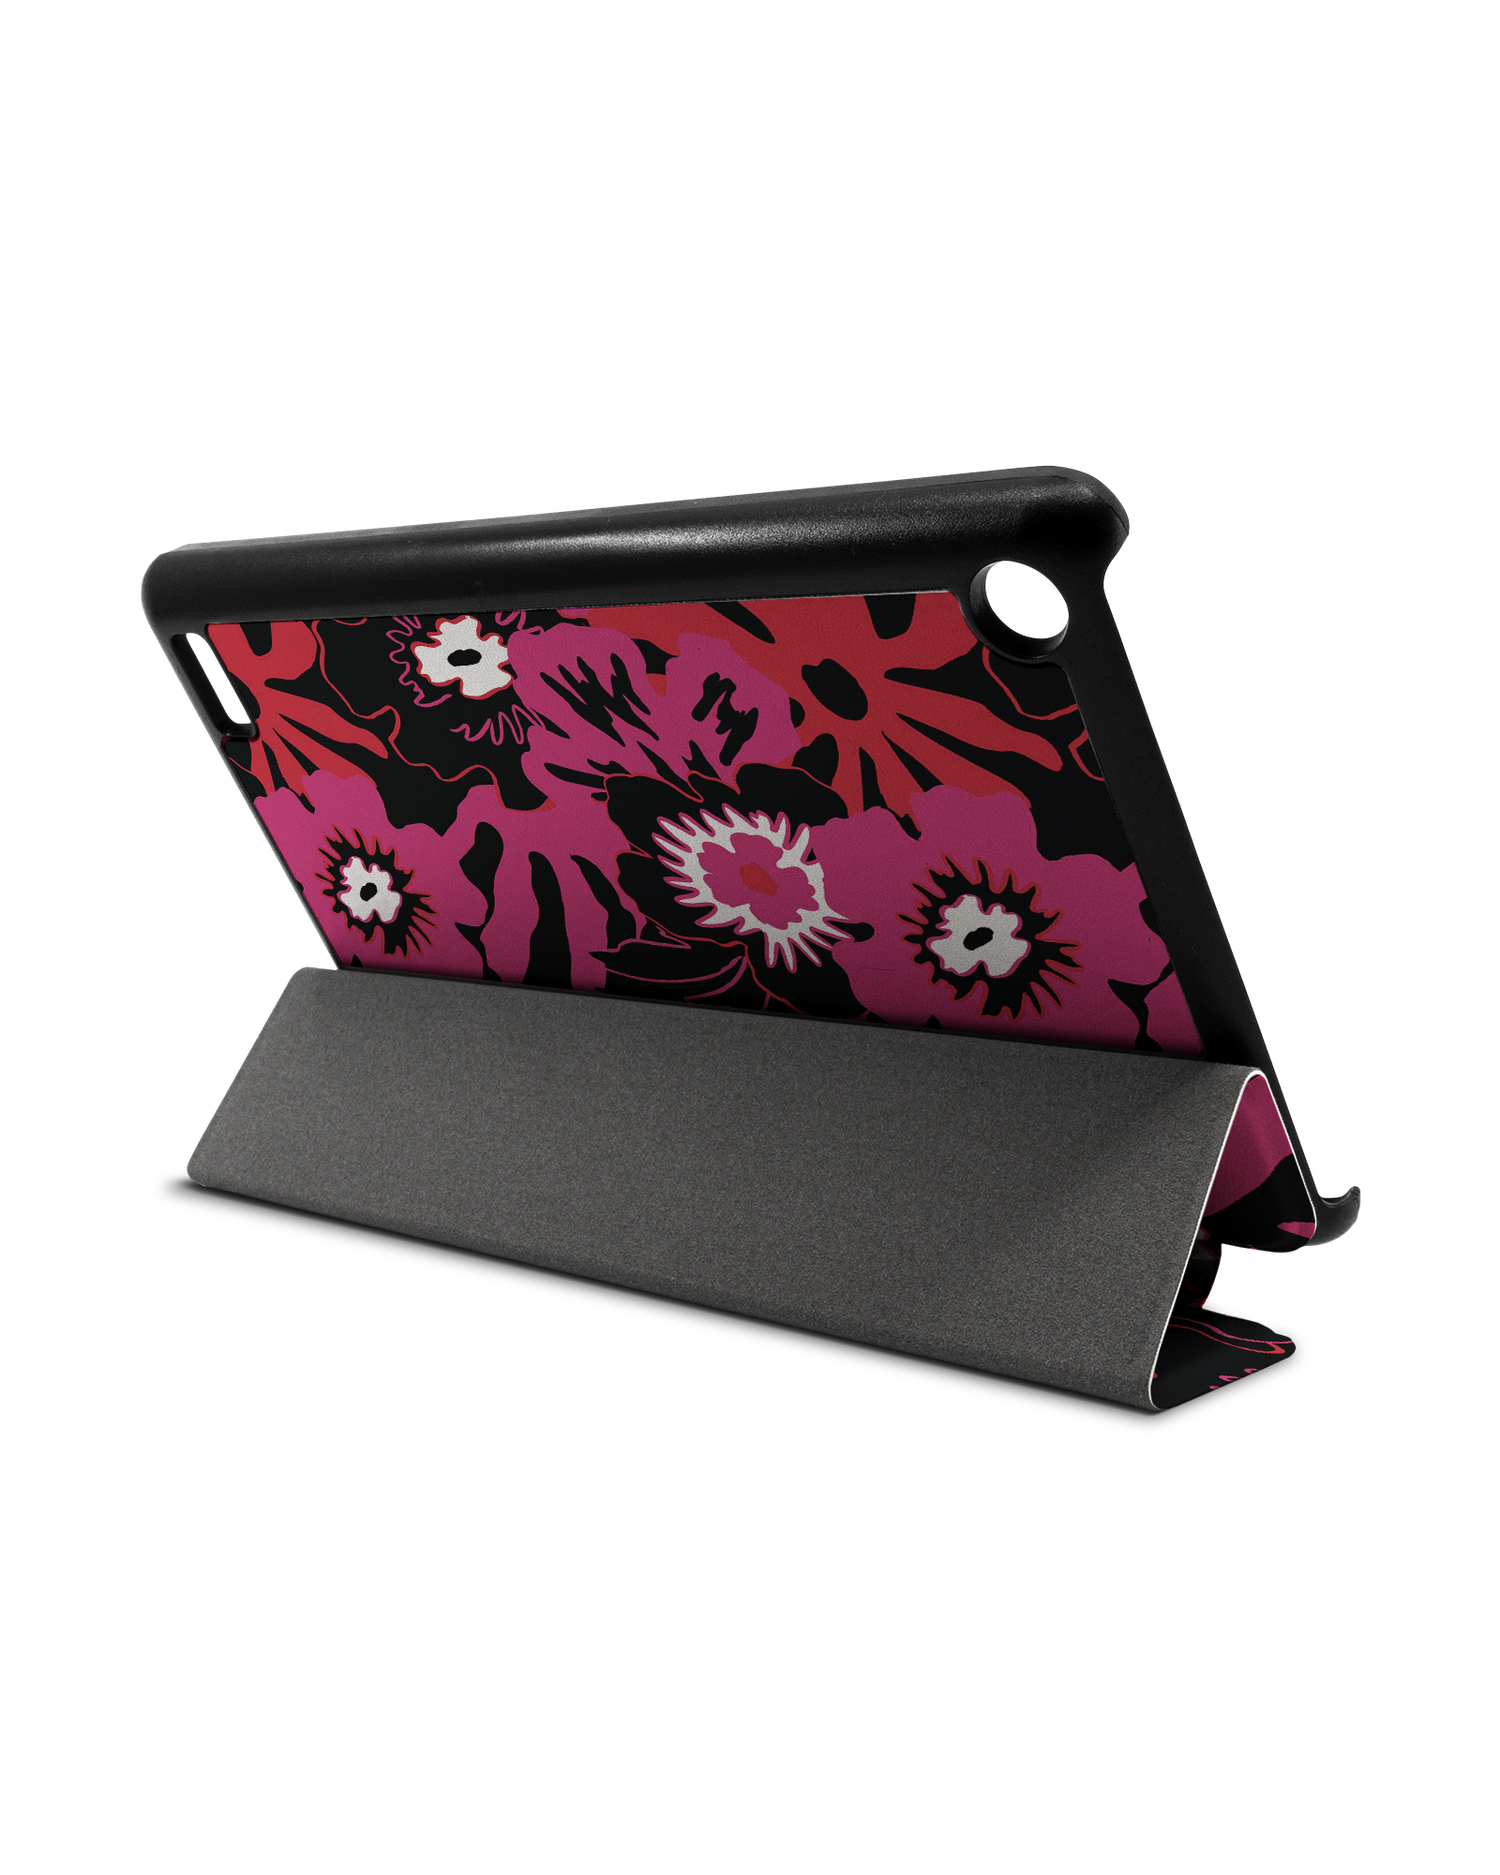 Flower Works Tablet Smart Case für Amazon Fire 7: Aufgestellt im Querformat